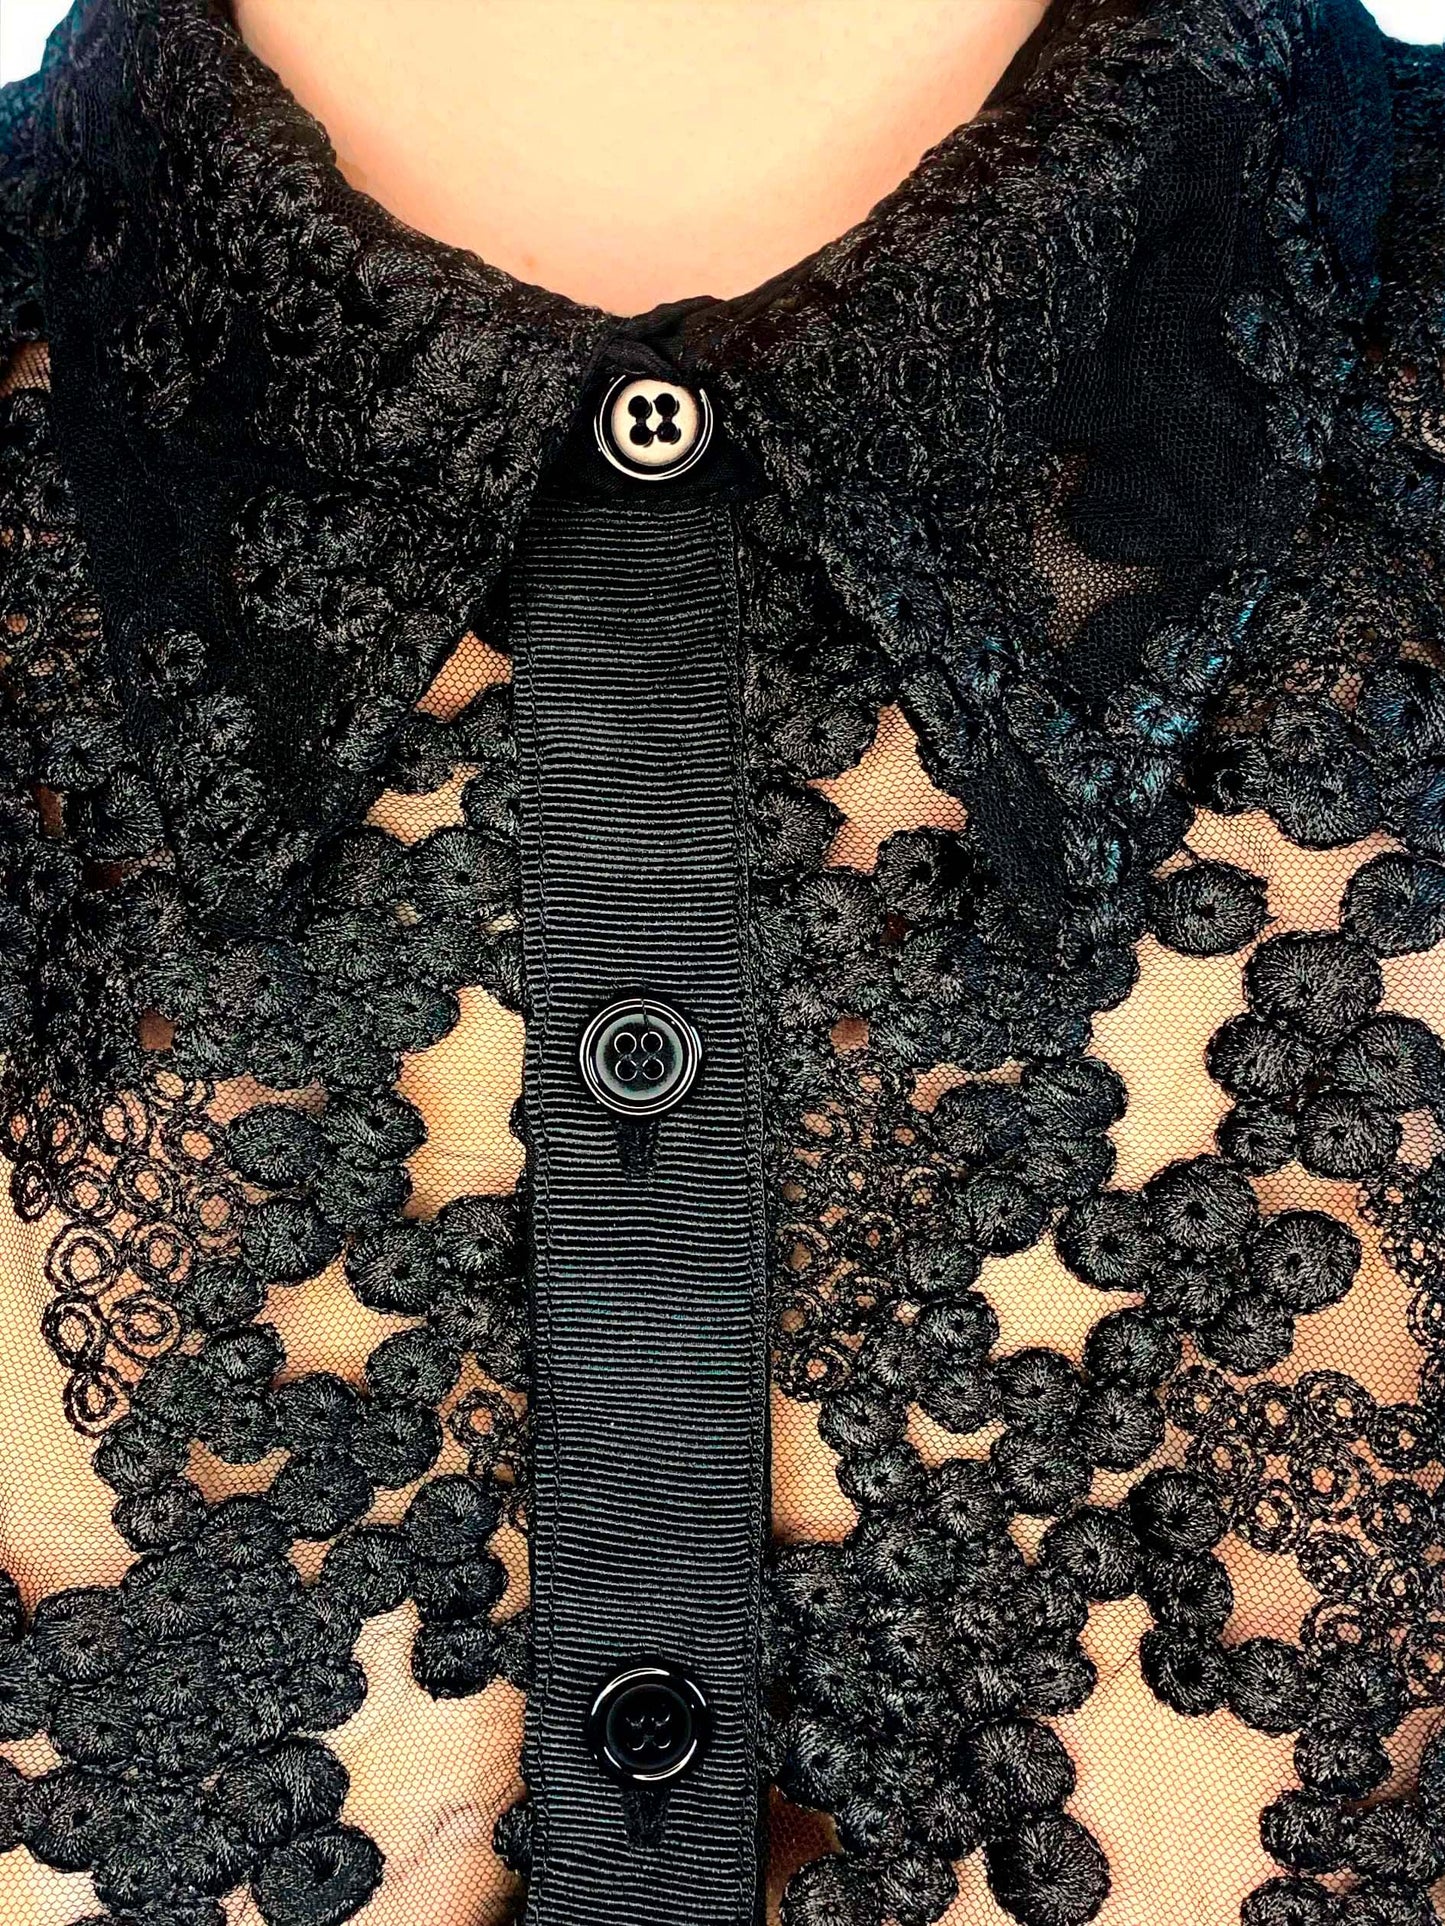 Black Embroidered Shirt Short Sleeve  Unisex